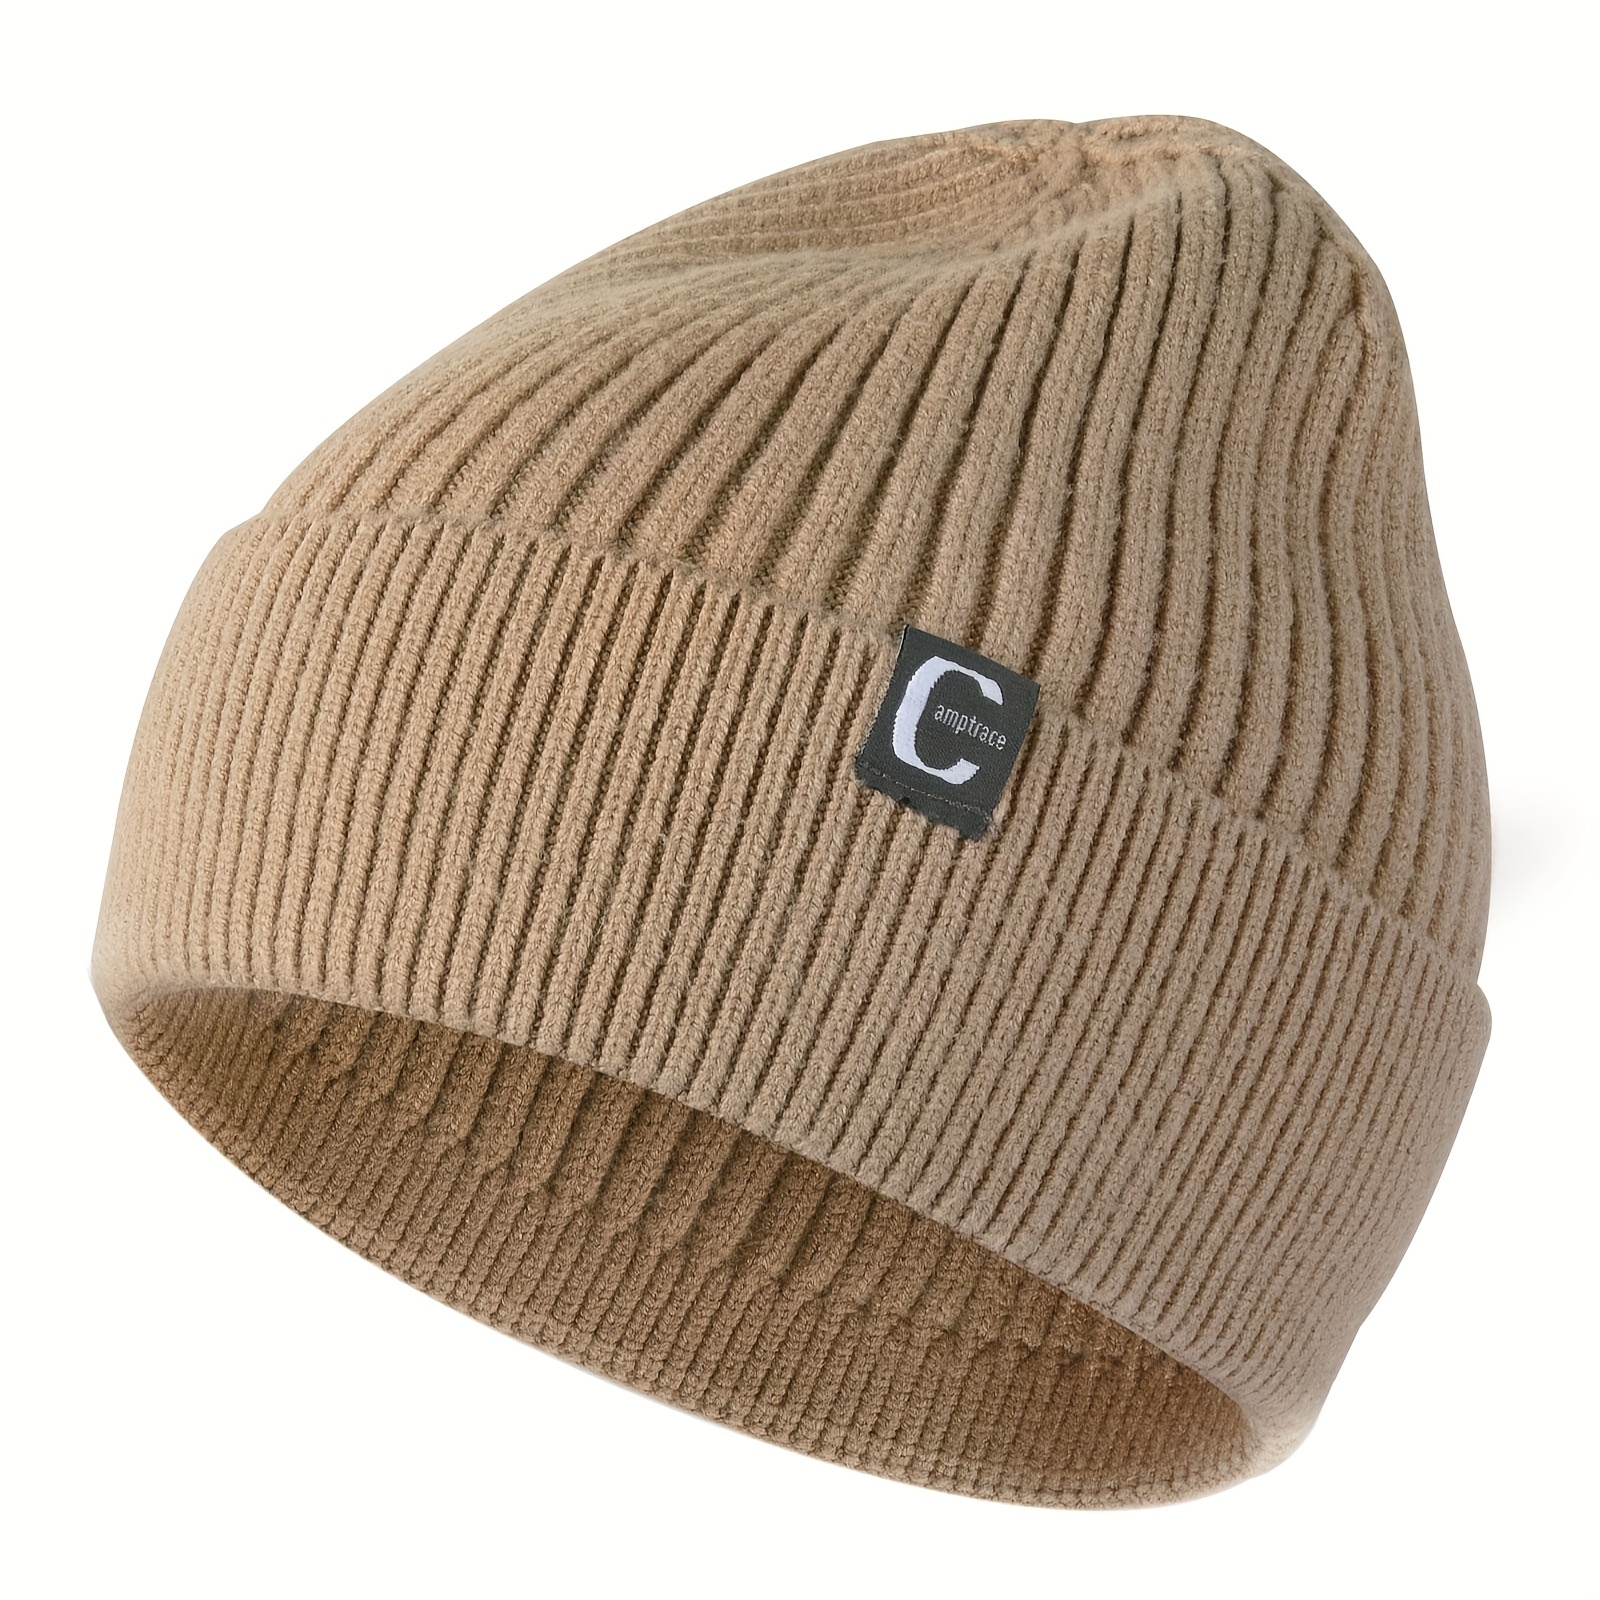 Bonnet tricoté unisexe – Essential